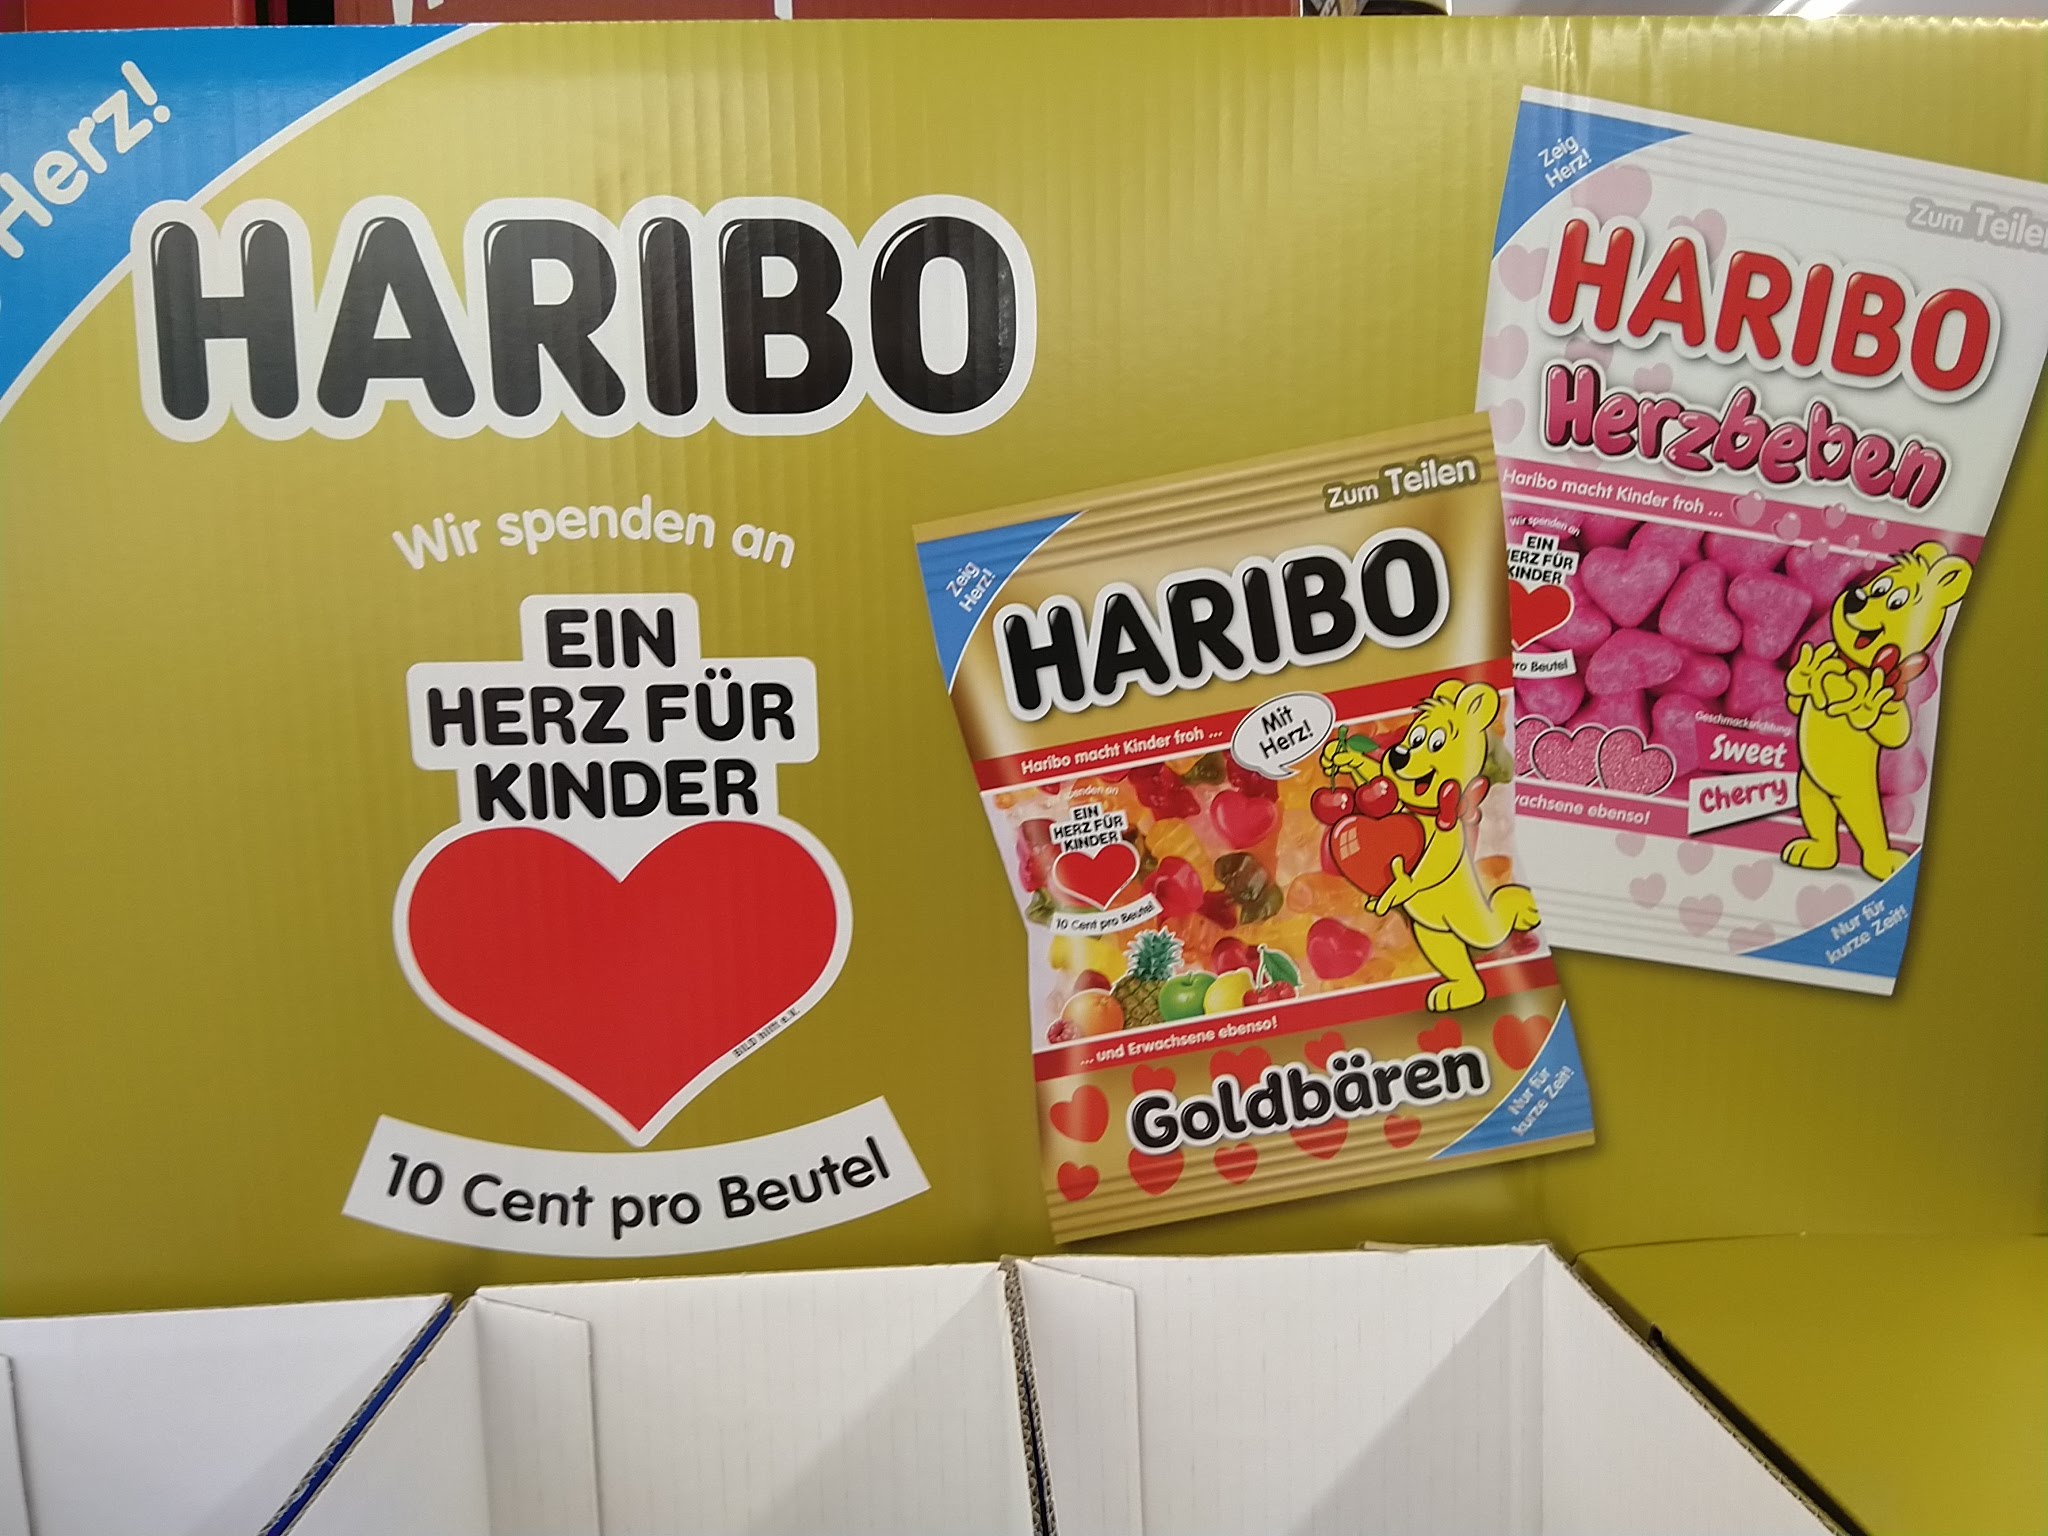 Haribo verlost Herz-Pakete mit Plüsch-Goldbär, Tassen, Skat-Spiel